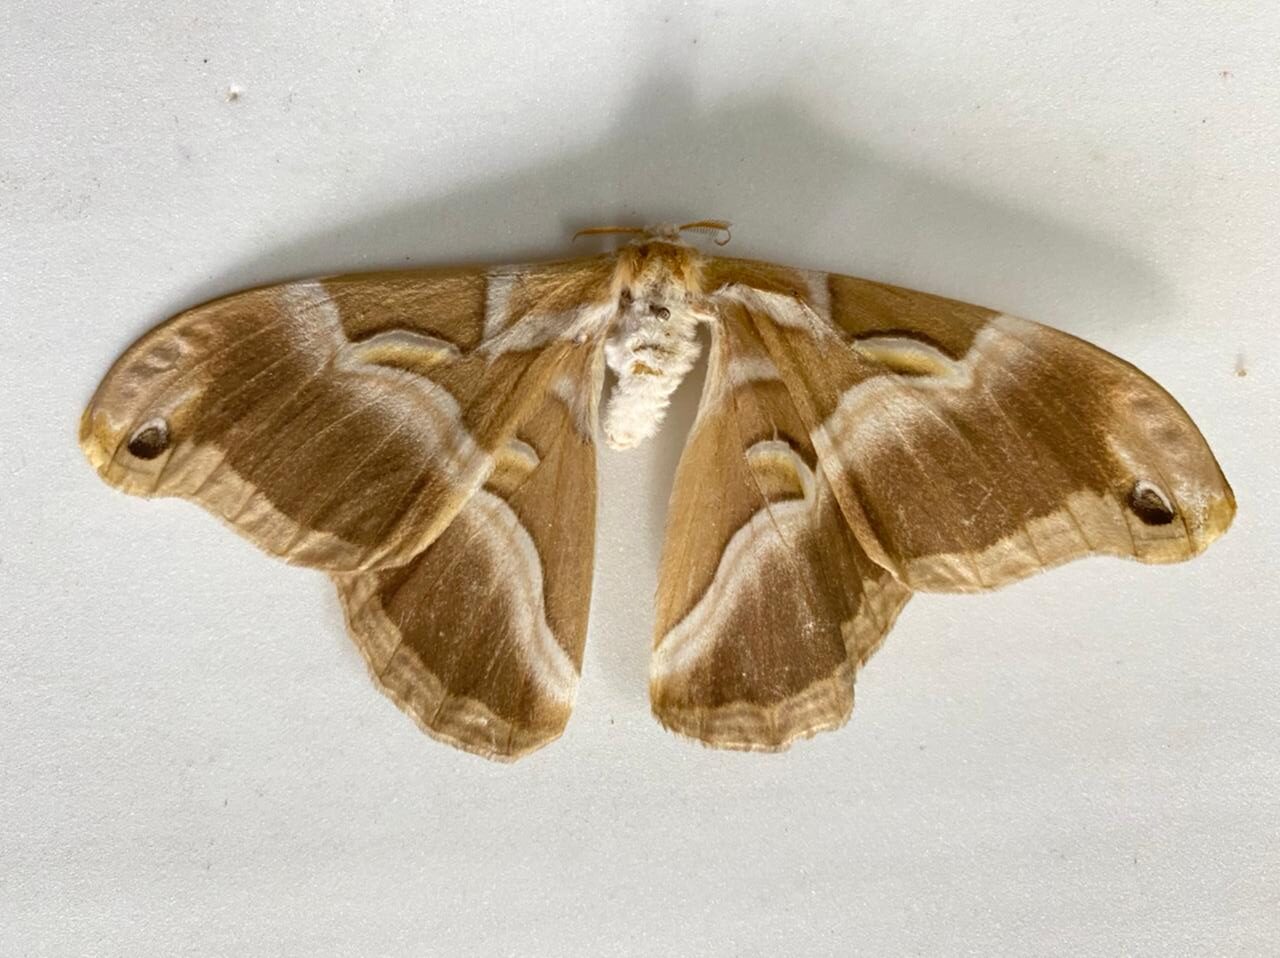 Eri silkworm moth